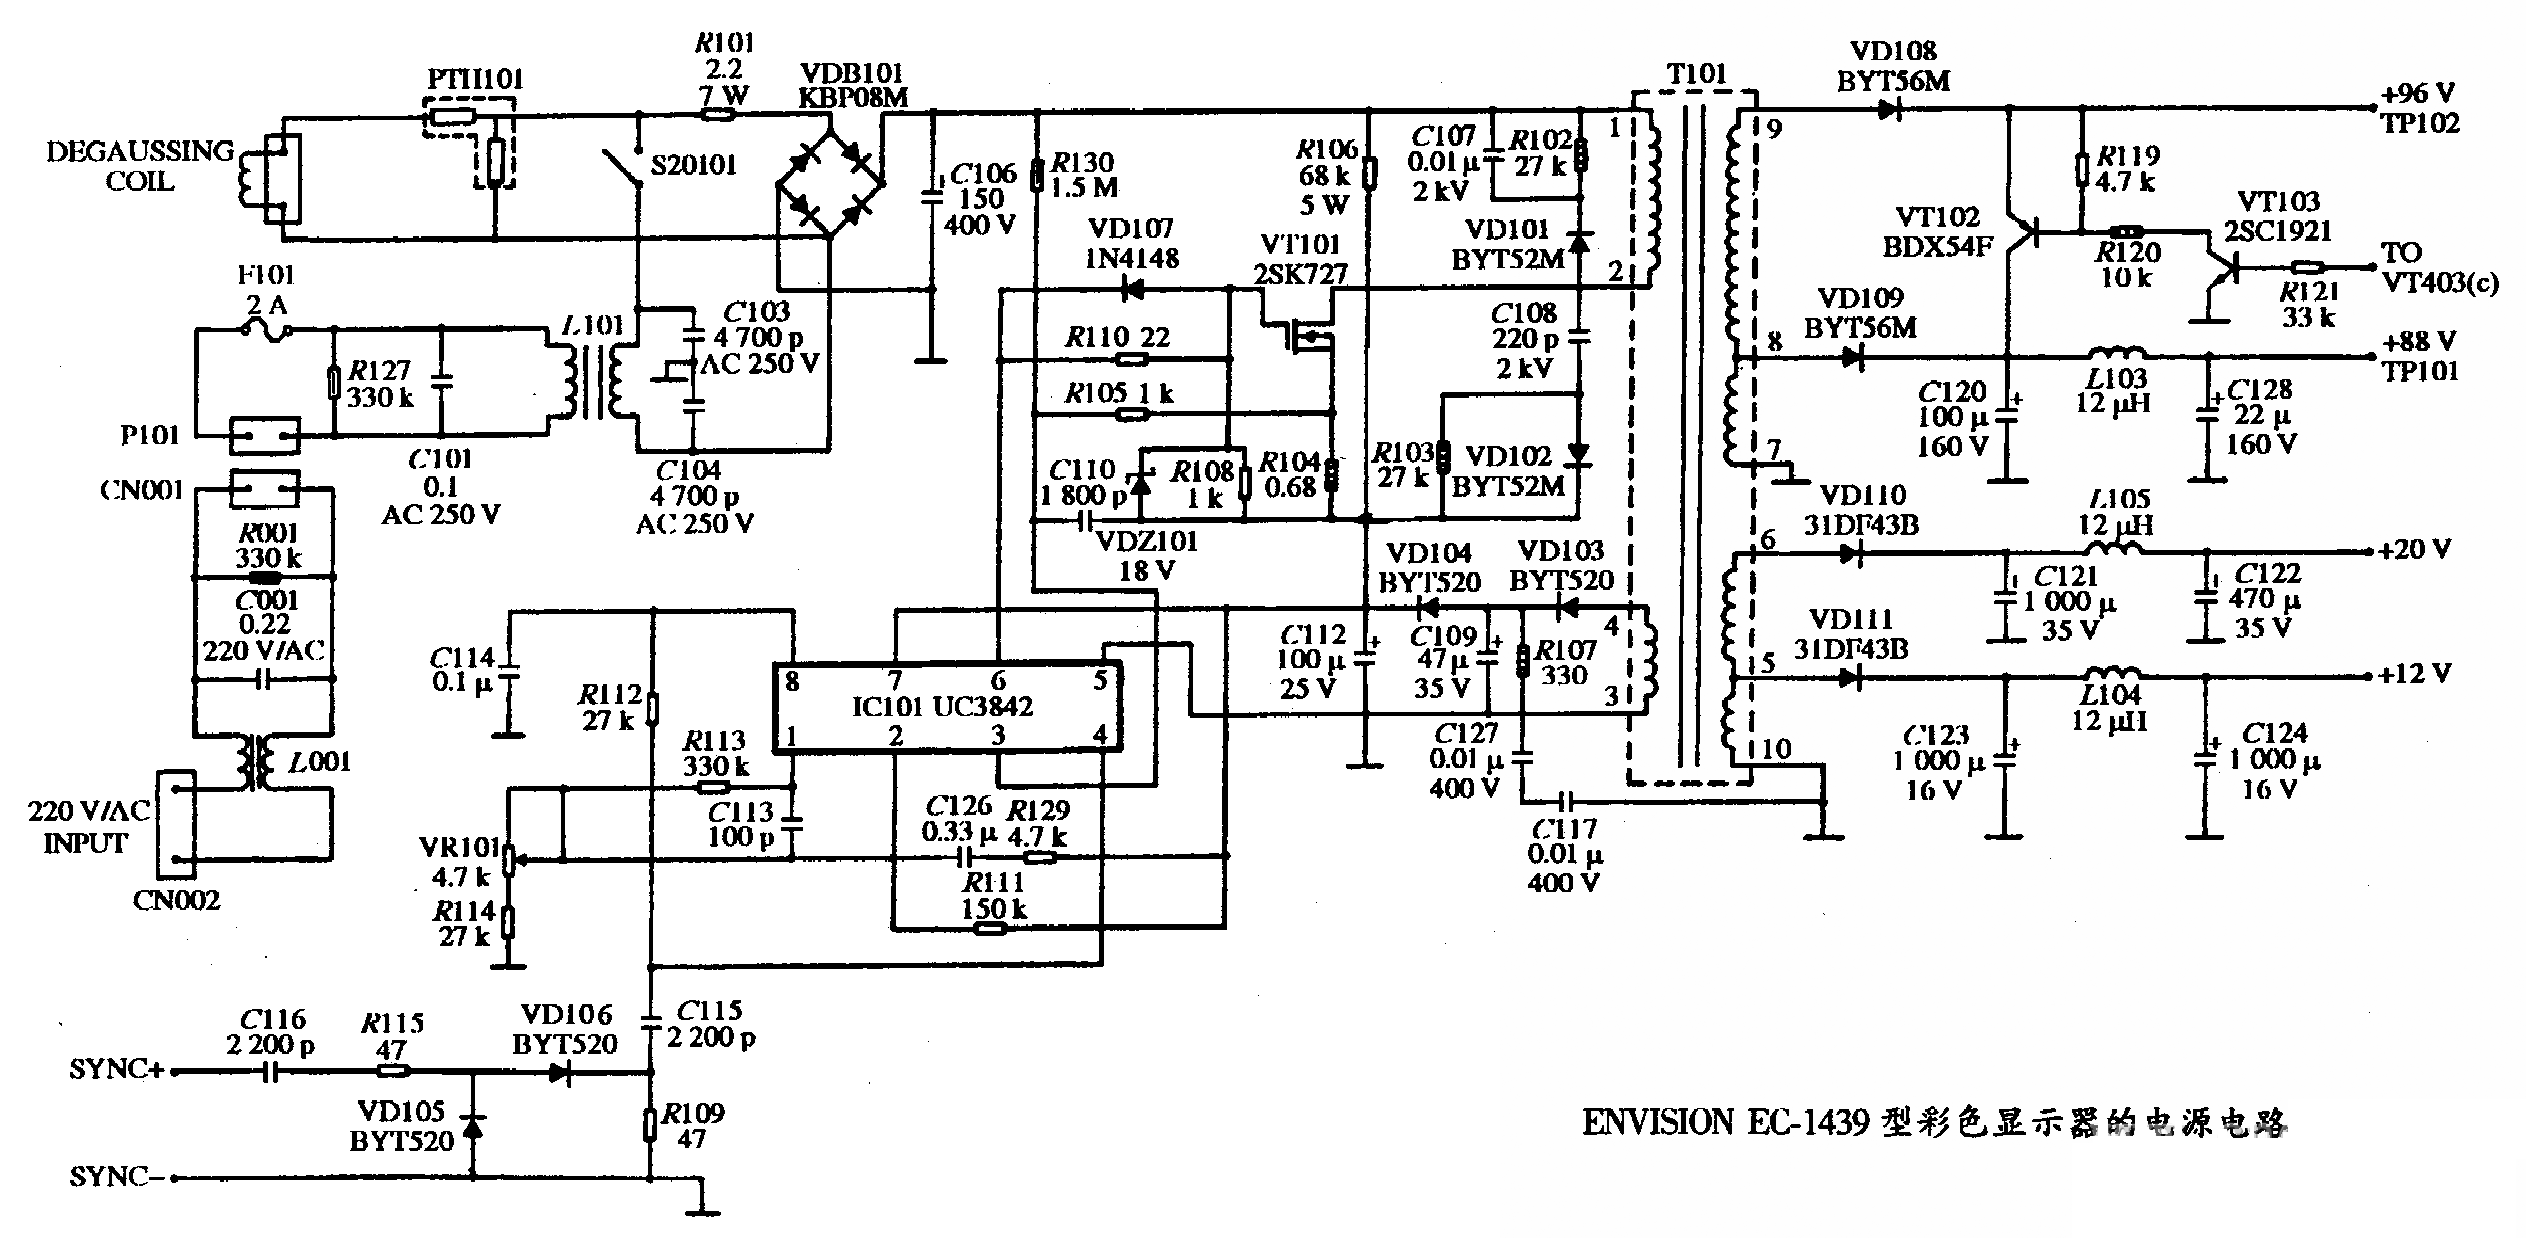 ENVISION EC-1439型彩色显示器的电源电路图